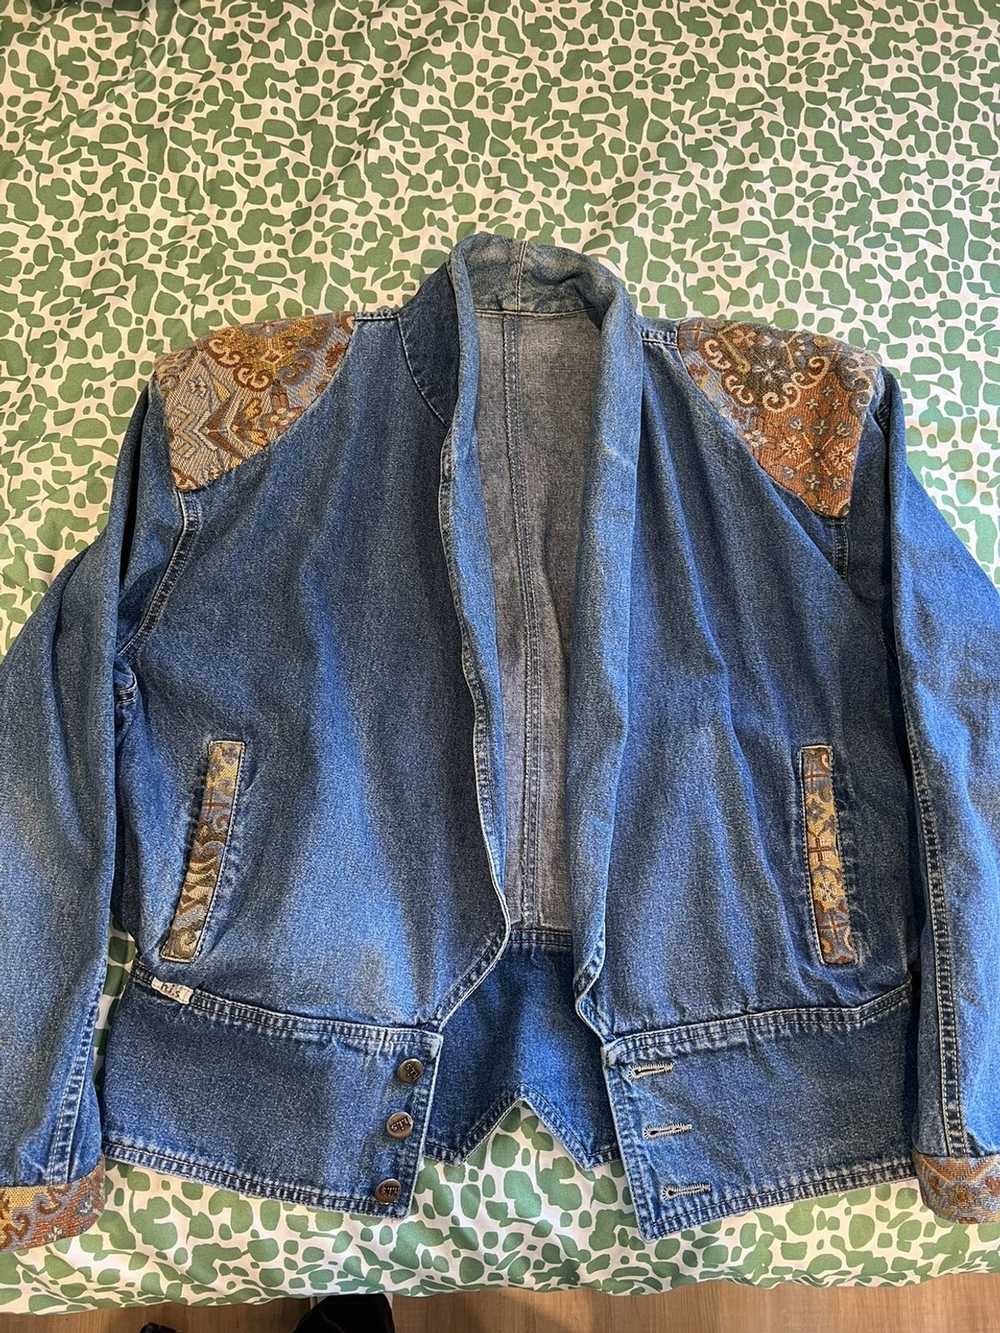 Vintage Vintage denim jacket - image 1